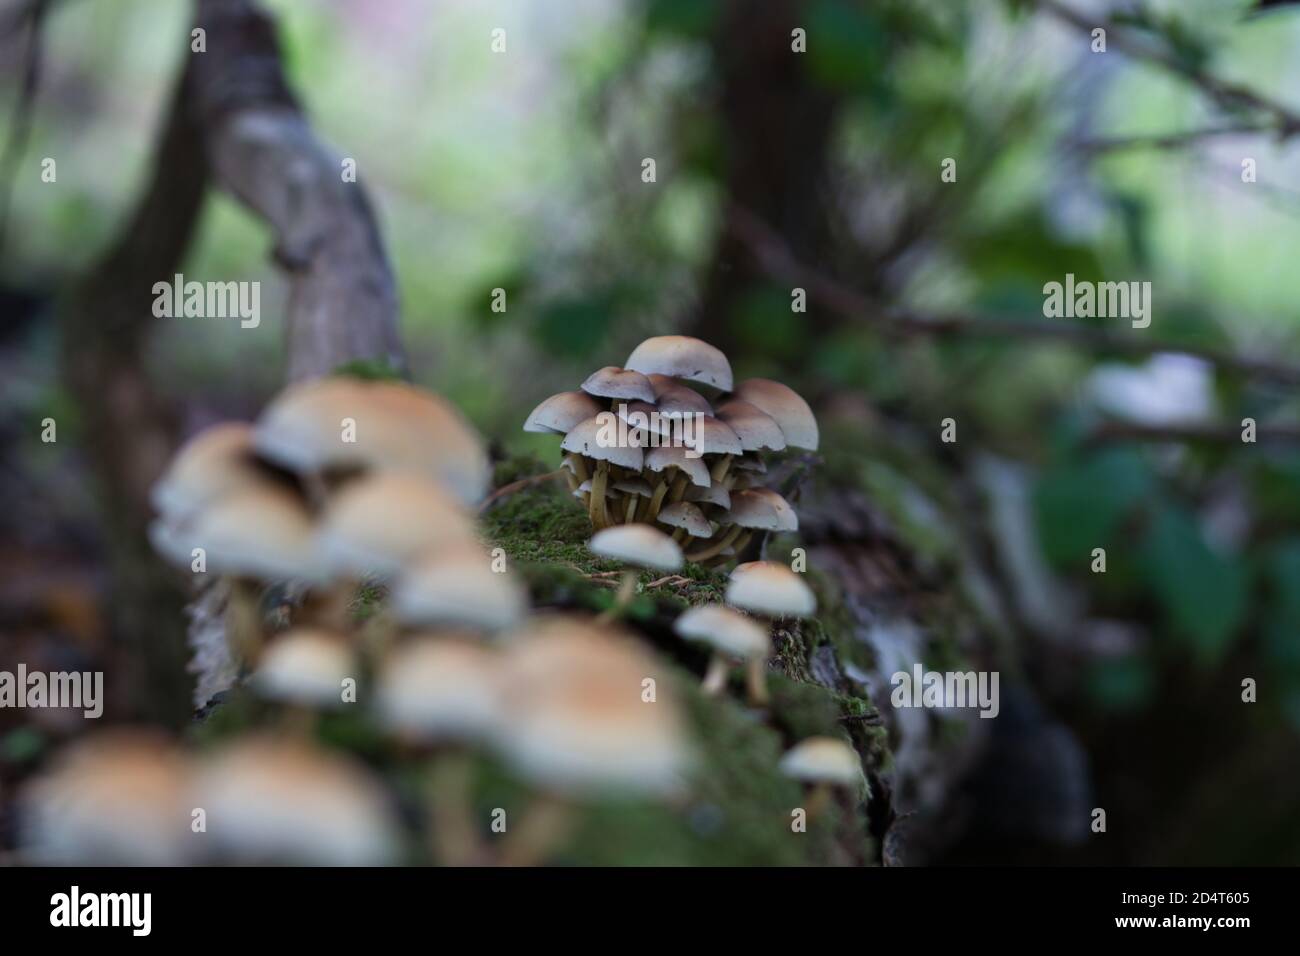 Boschivo a grappolo , funghi di tufts di zolfo che crescono in grappoli su un tronco di albero morto coperto di muschio nel bosco, background della stagione autunnale Foto Stock